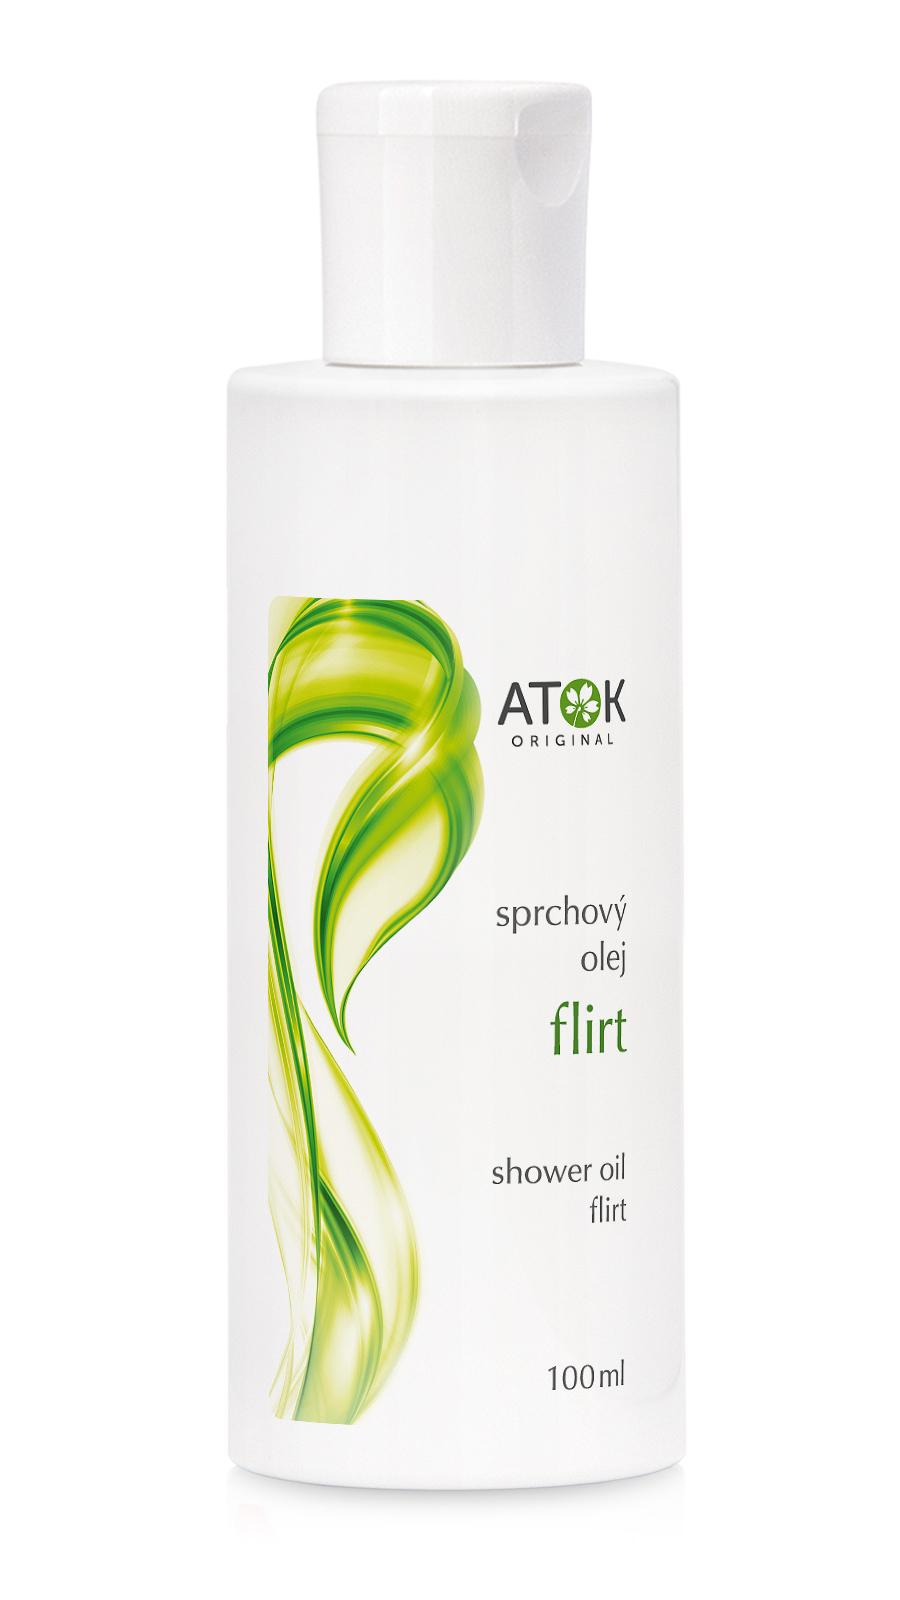 Sprchový olej Flirt - Original ATOK Obsah: 100 ml